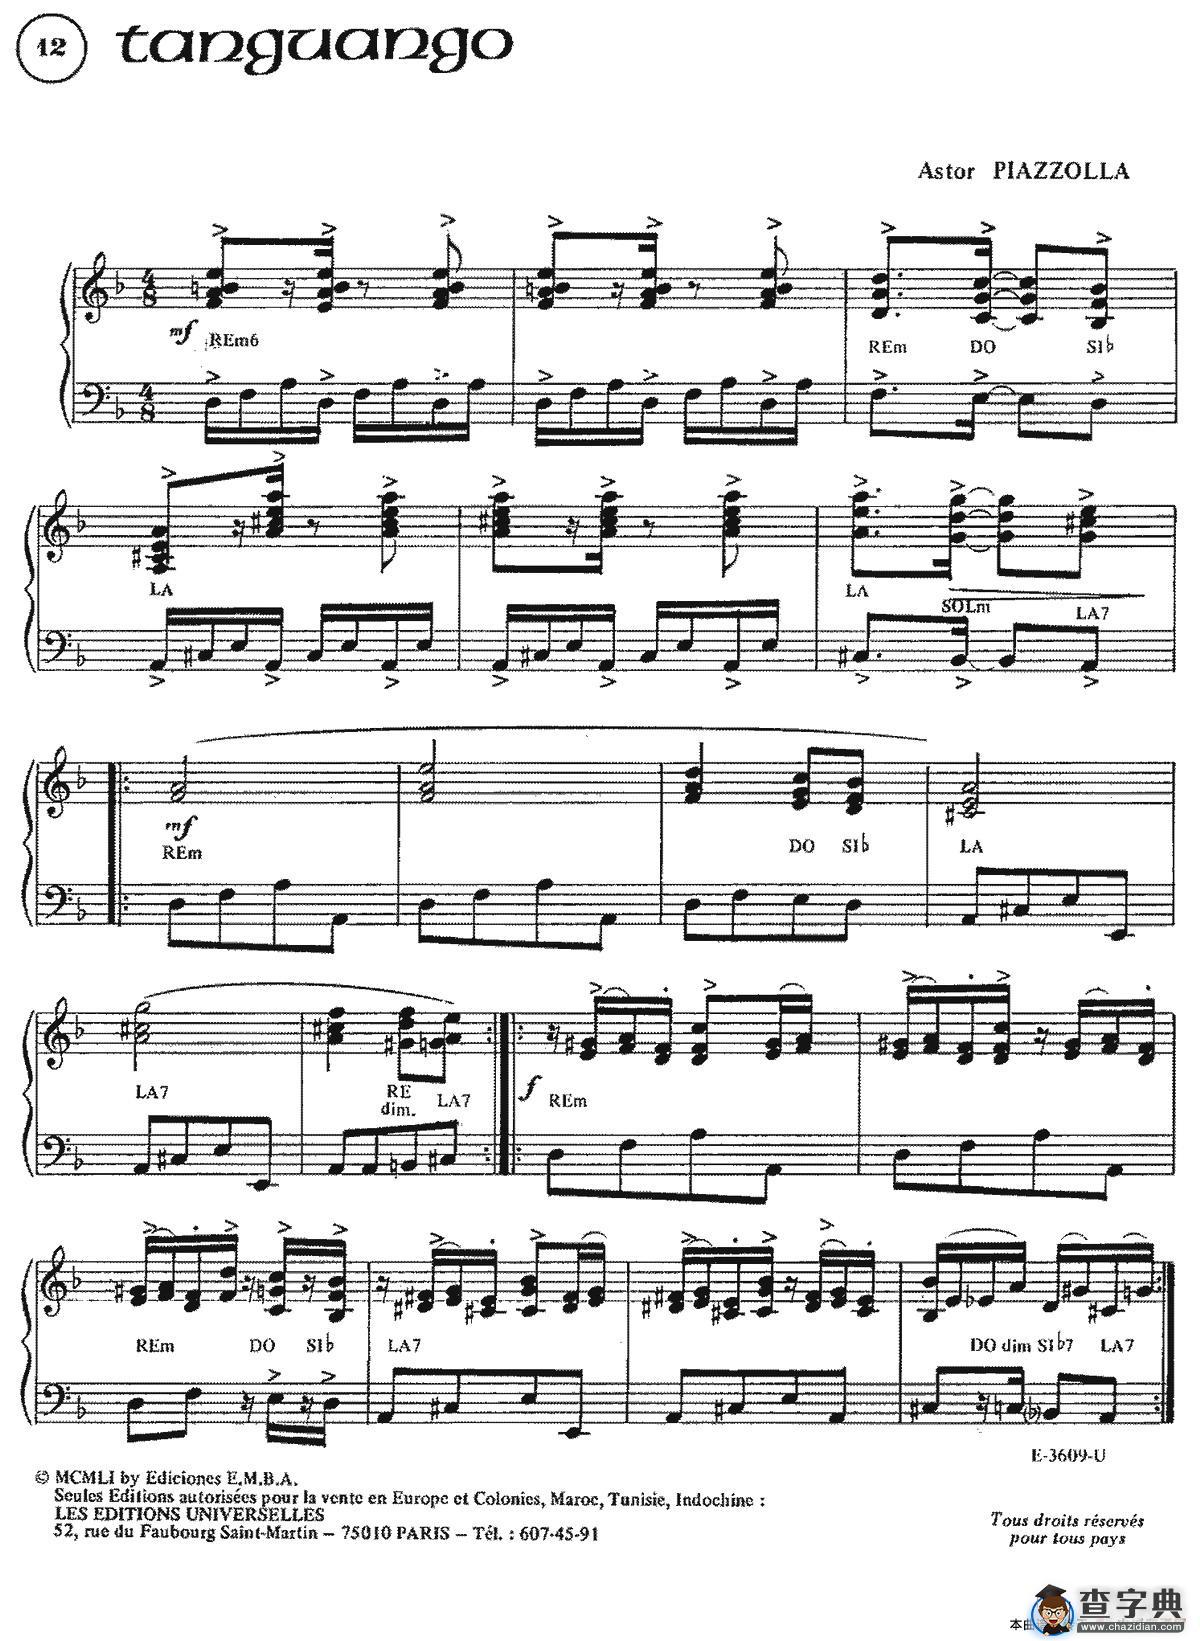 Piazzolla合集：12、Tanguango手风琴谱/简谱